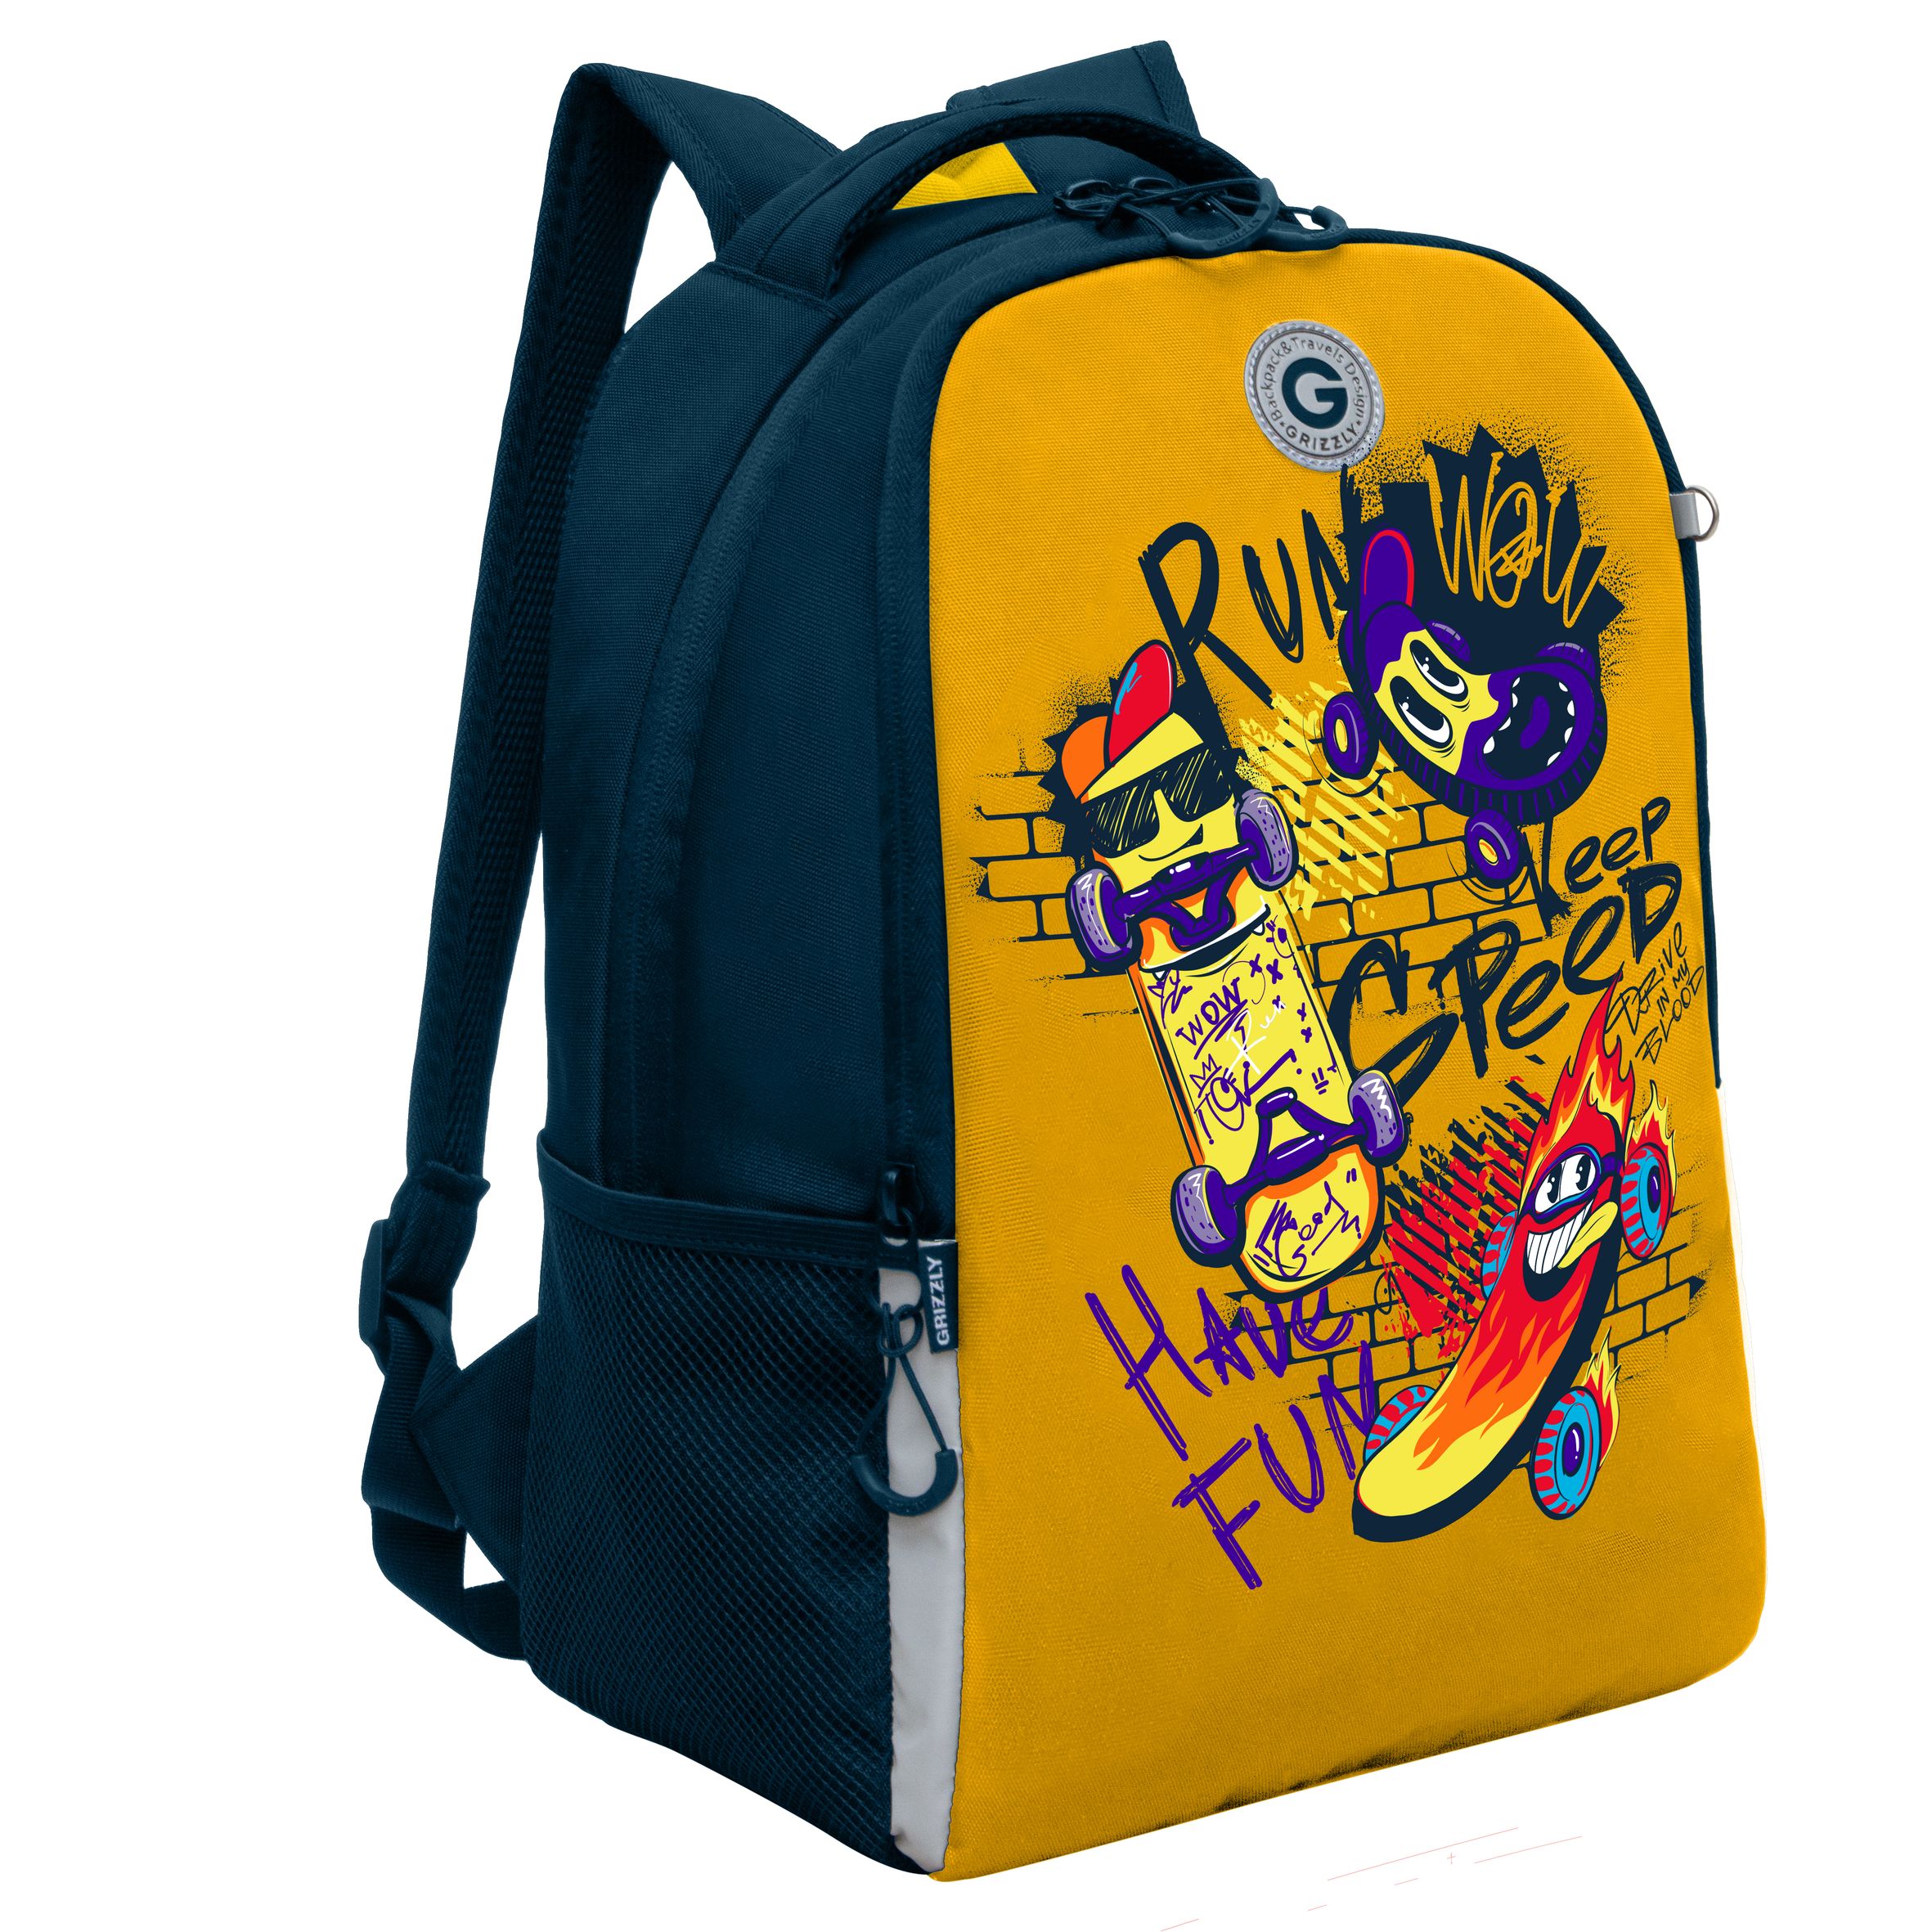 Рюкзак школьный GRIZZLY легкий с жесткой спинкой, 2 отделения, для мальчика RB-451-7/2 рюкзак школьный grizzly с карманом для ноутбука 13 2 отделения для девочки rg 466 2 2